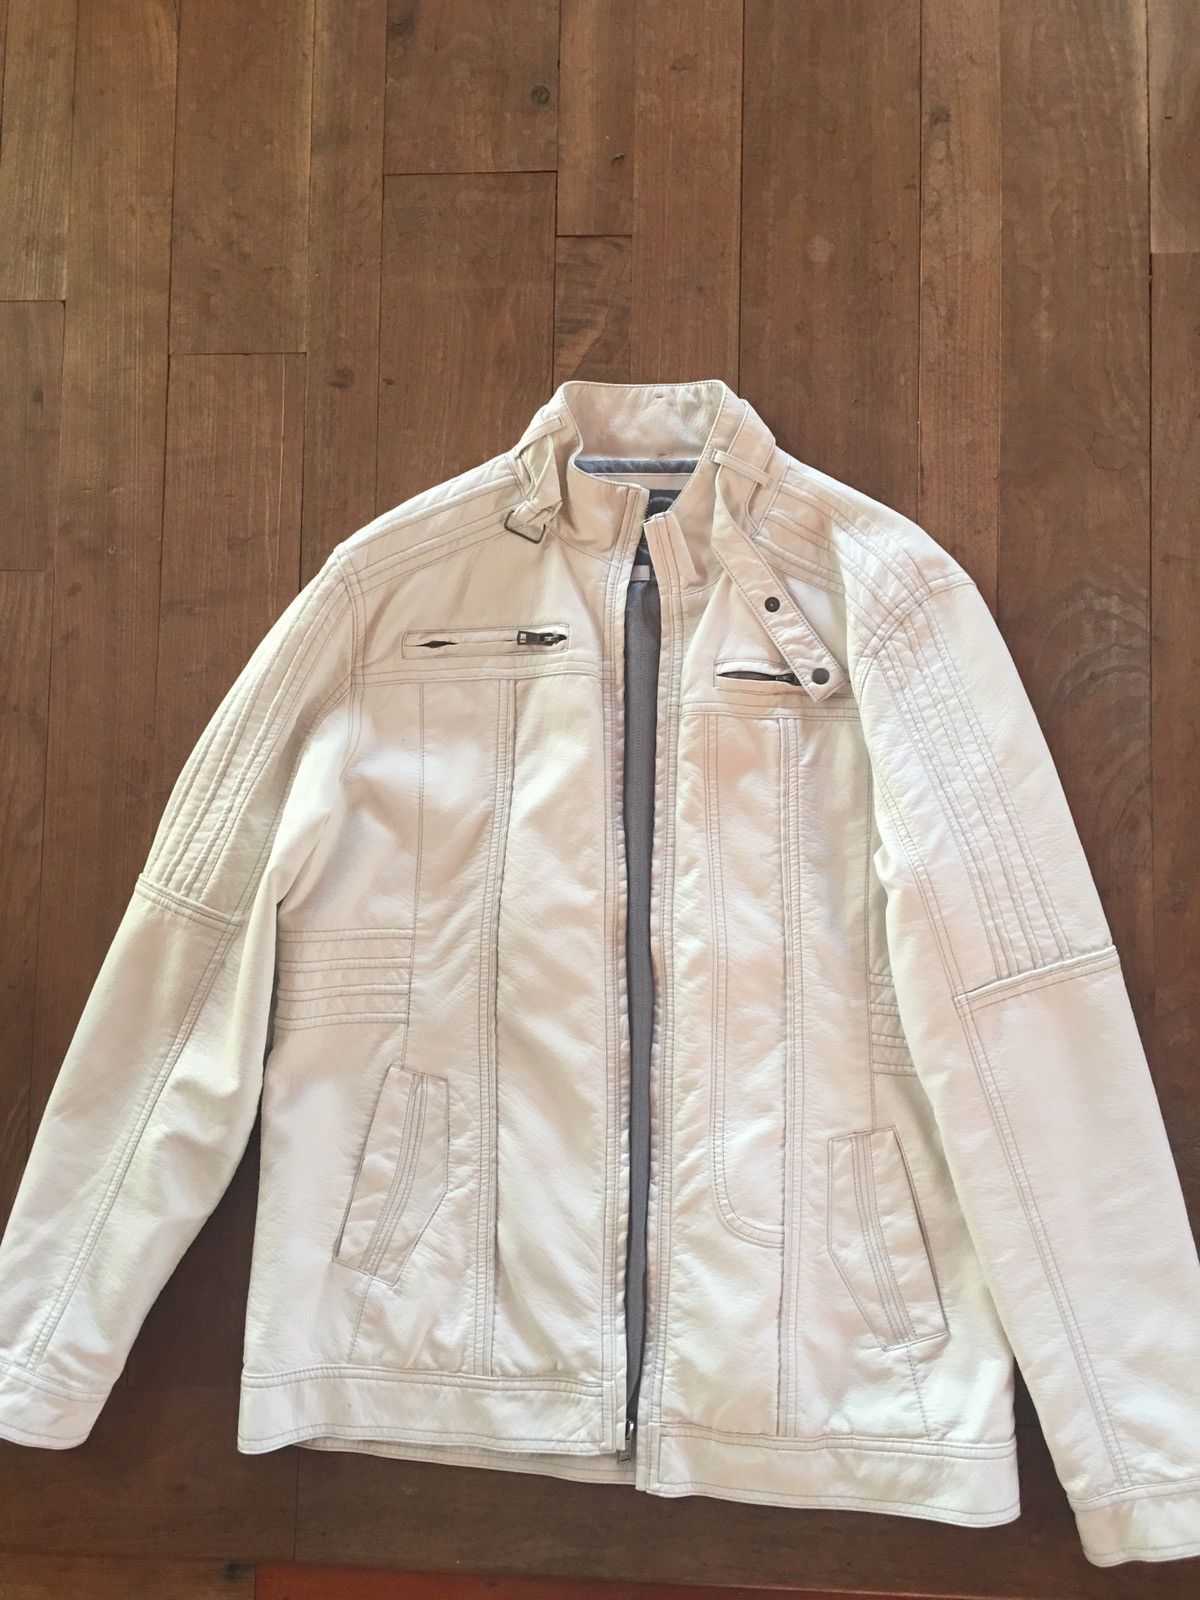 Bke BKE White Leather Jacket | Grailed